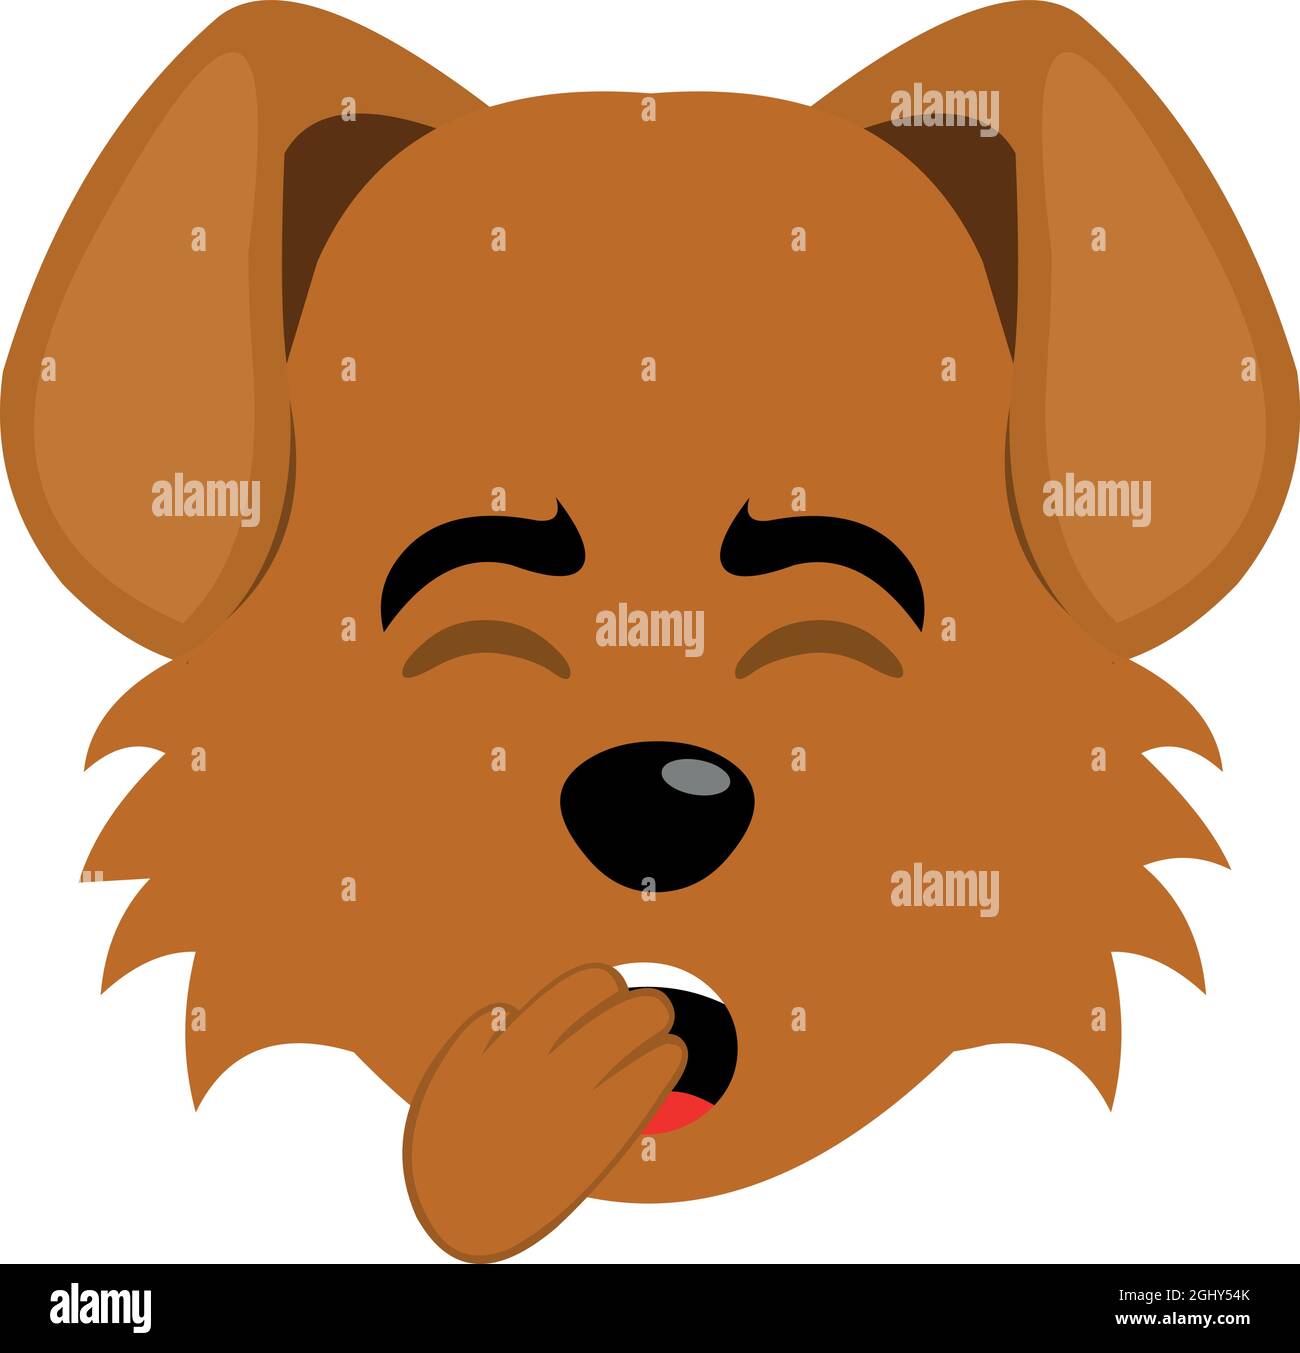 Illustrazione di emoticon vettoriale del volto di un cane cartoon sbadiglio Illustrazione Vettoriale